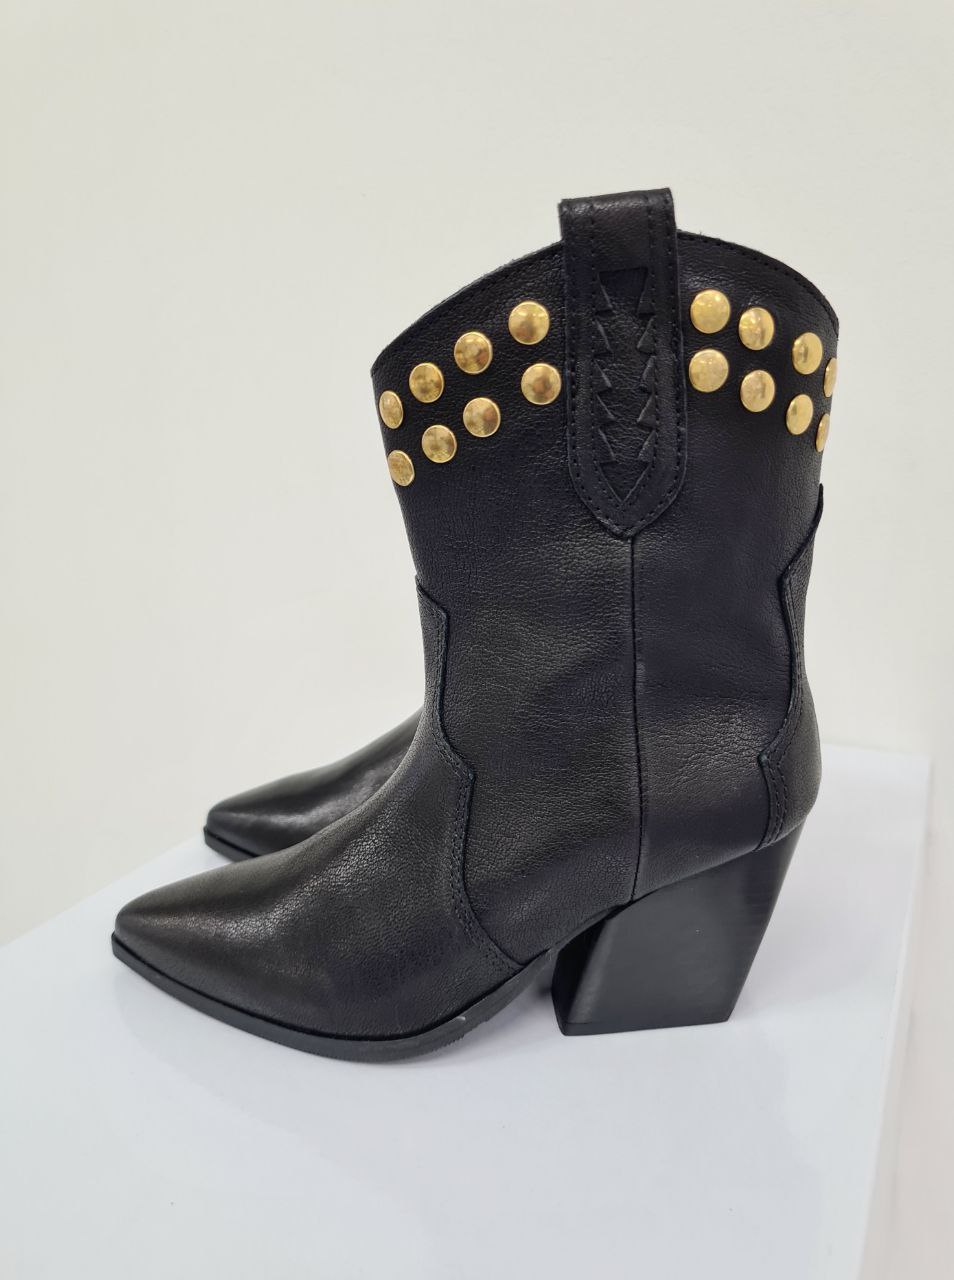 Итальянская одежда, бренд Spazio moda - Обувь, арт. 73225197